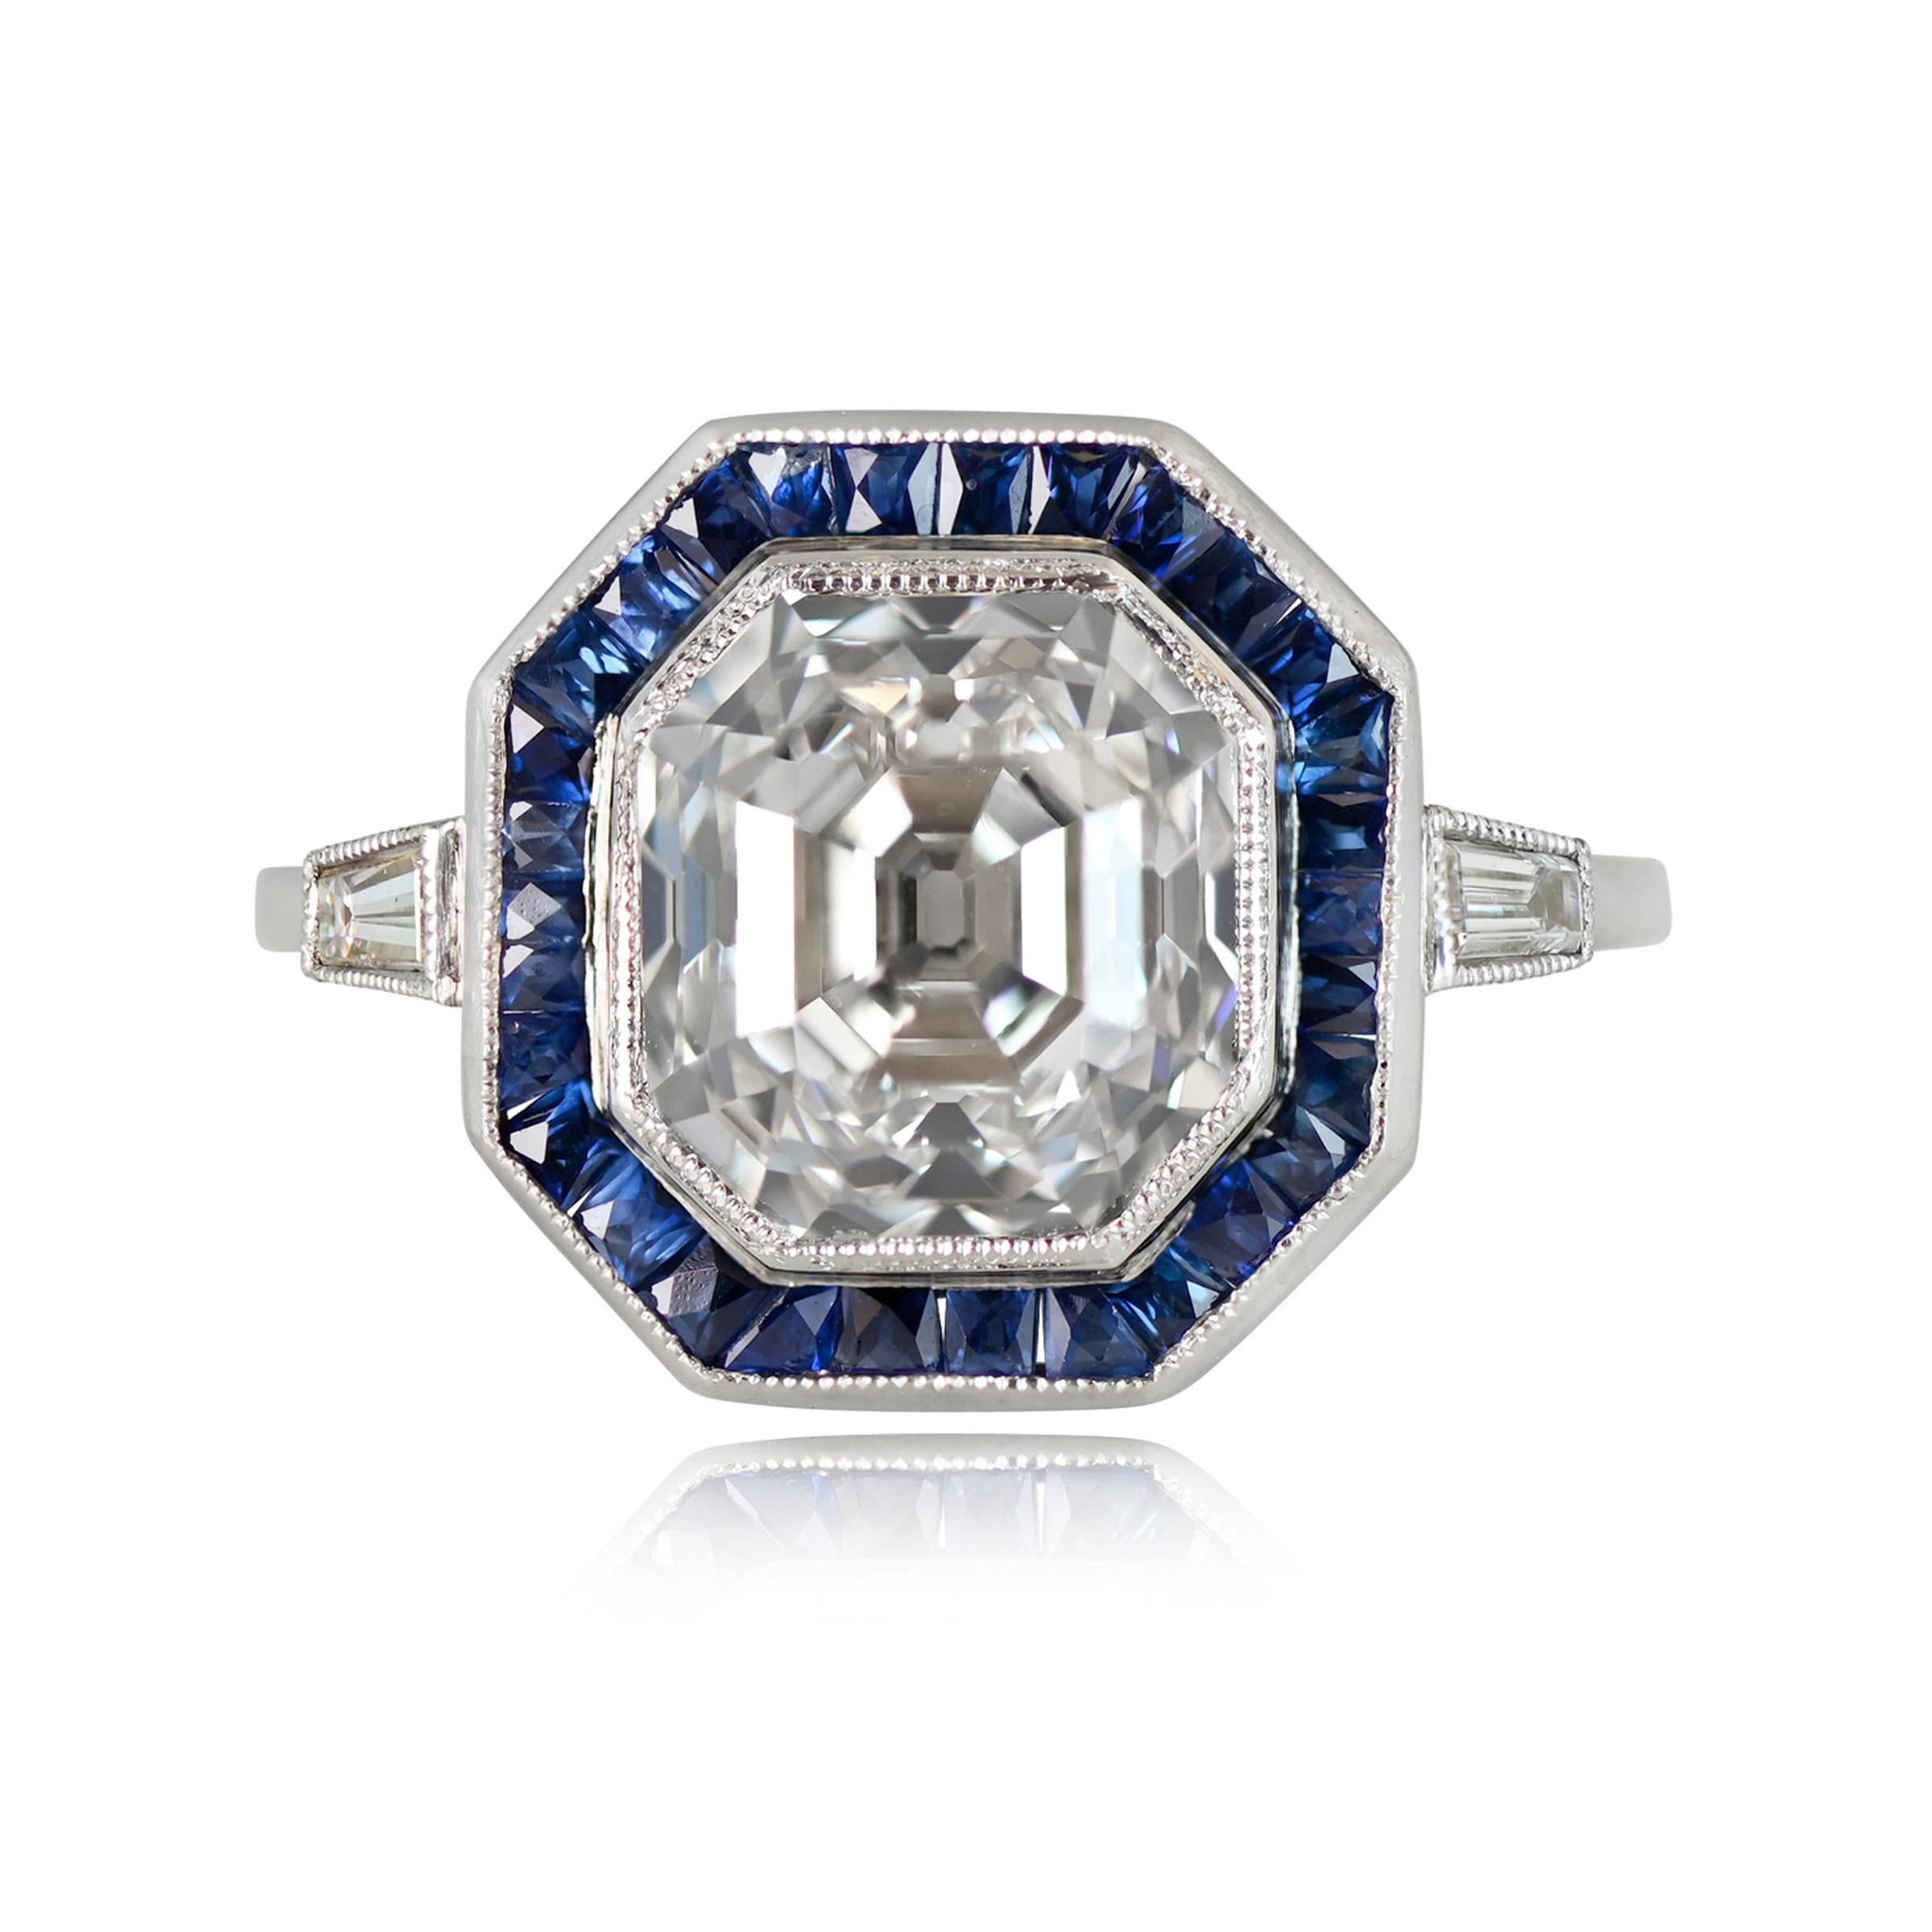 Ein exquisiter Diamant- und Saphir-Halo-Ring mit einem atemberaubenden 4,09-Karat-Diamanten im antiken Asscher-Schliff mit GIA-Zertifikat und tadelloser Farbe G und Reinheit VS1. Die Seltenheit eines solchen antiken Schmuckstücks ist unvergleichlich